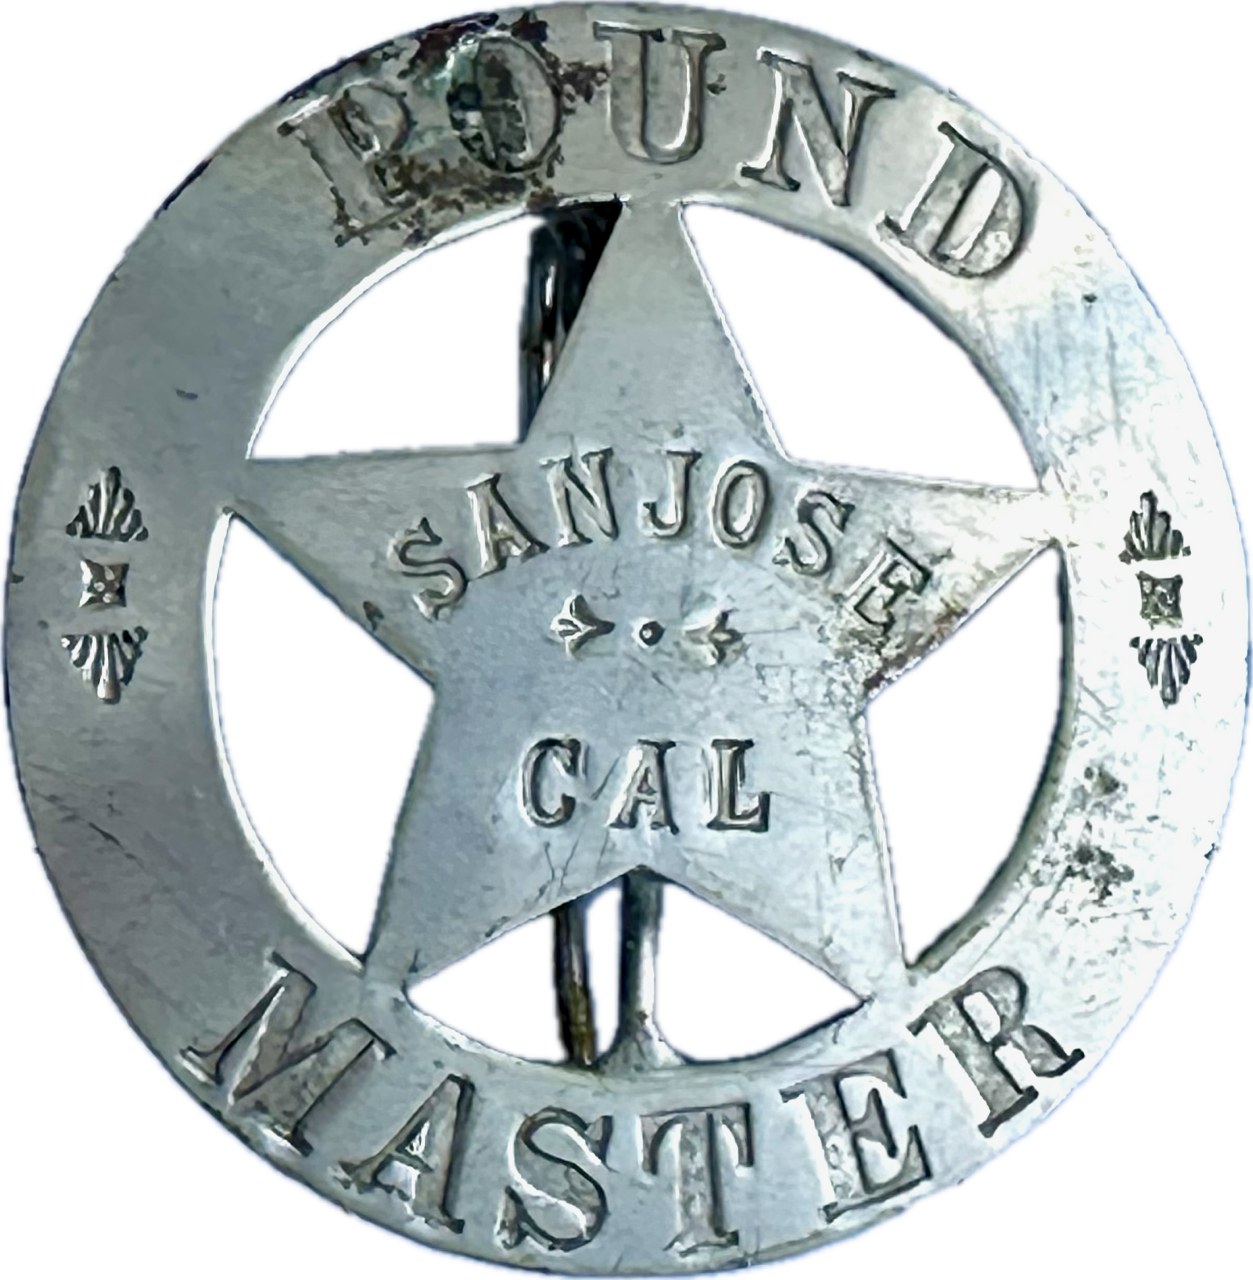 Pound Master San Jose, CAL